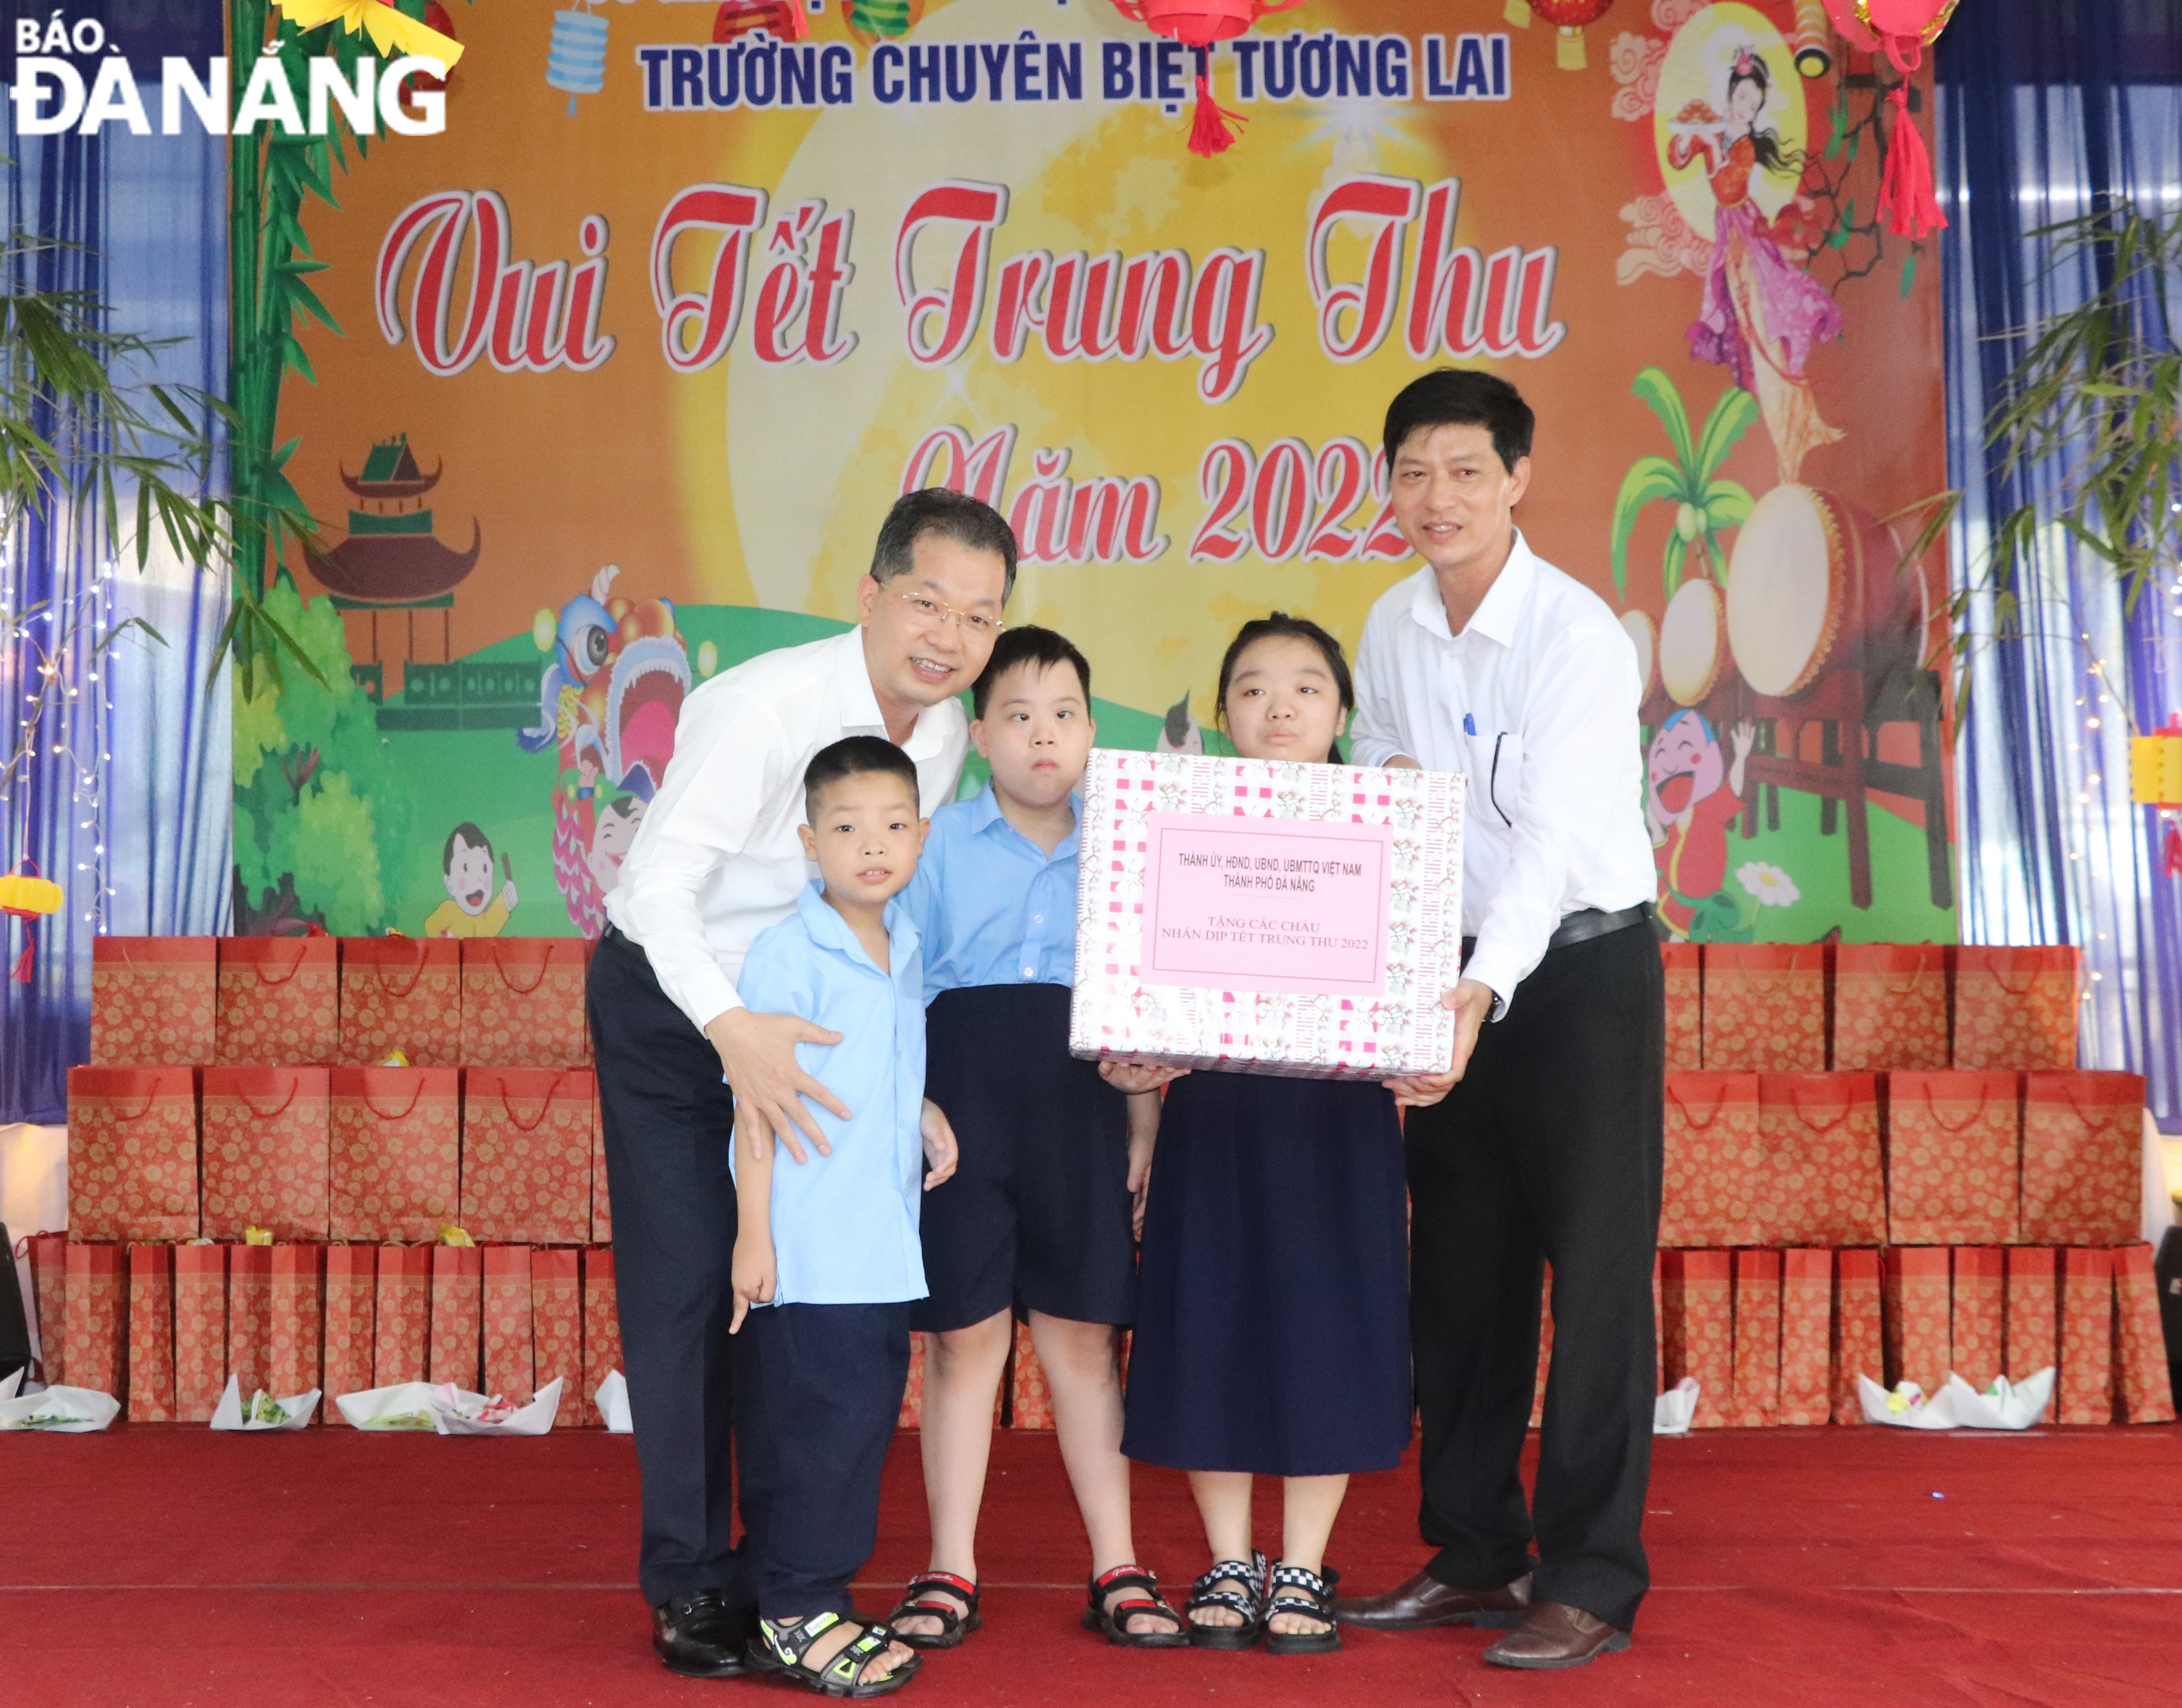 Bí thư Thành ủy Nguyễn Văn Quảng (bìa trái) tặng quà Trung thu cho thầy và trò Trường Chuyên biệt Tương Lai. Ảnh: LÊ HÙNG